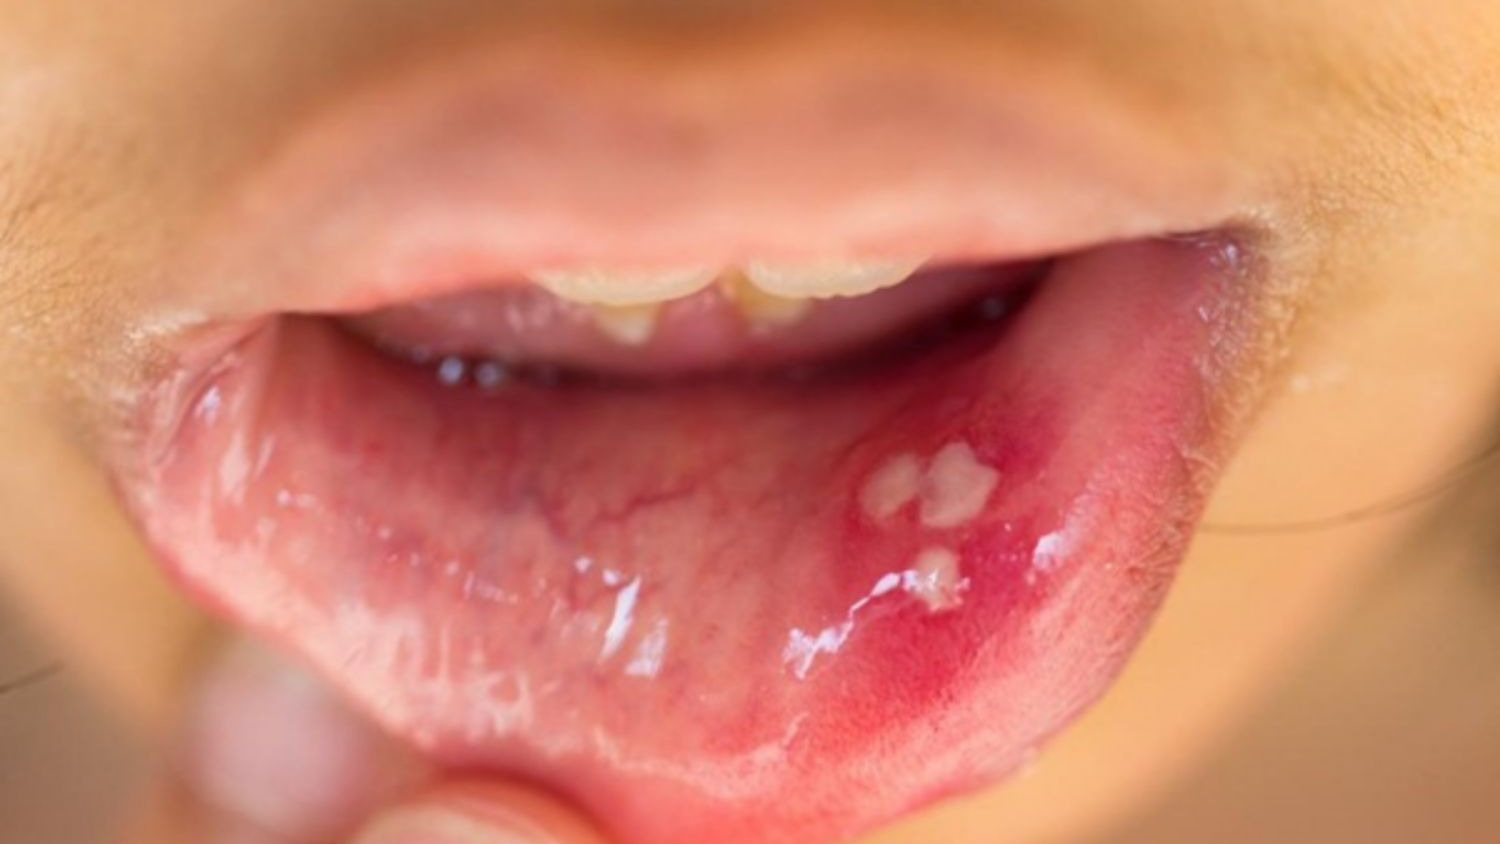 Nhiễm HPV ở miệng: Nguyên nhân và cách phòng ngừa bệnh hiệu quả - Nhà thuốc FPT Long Châu